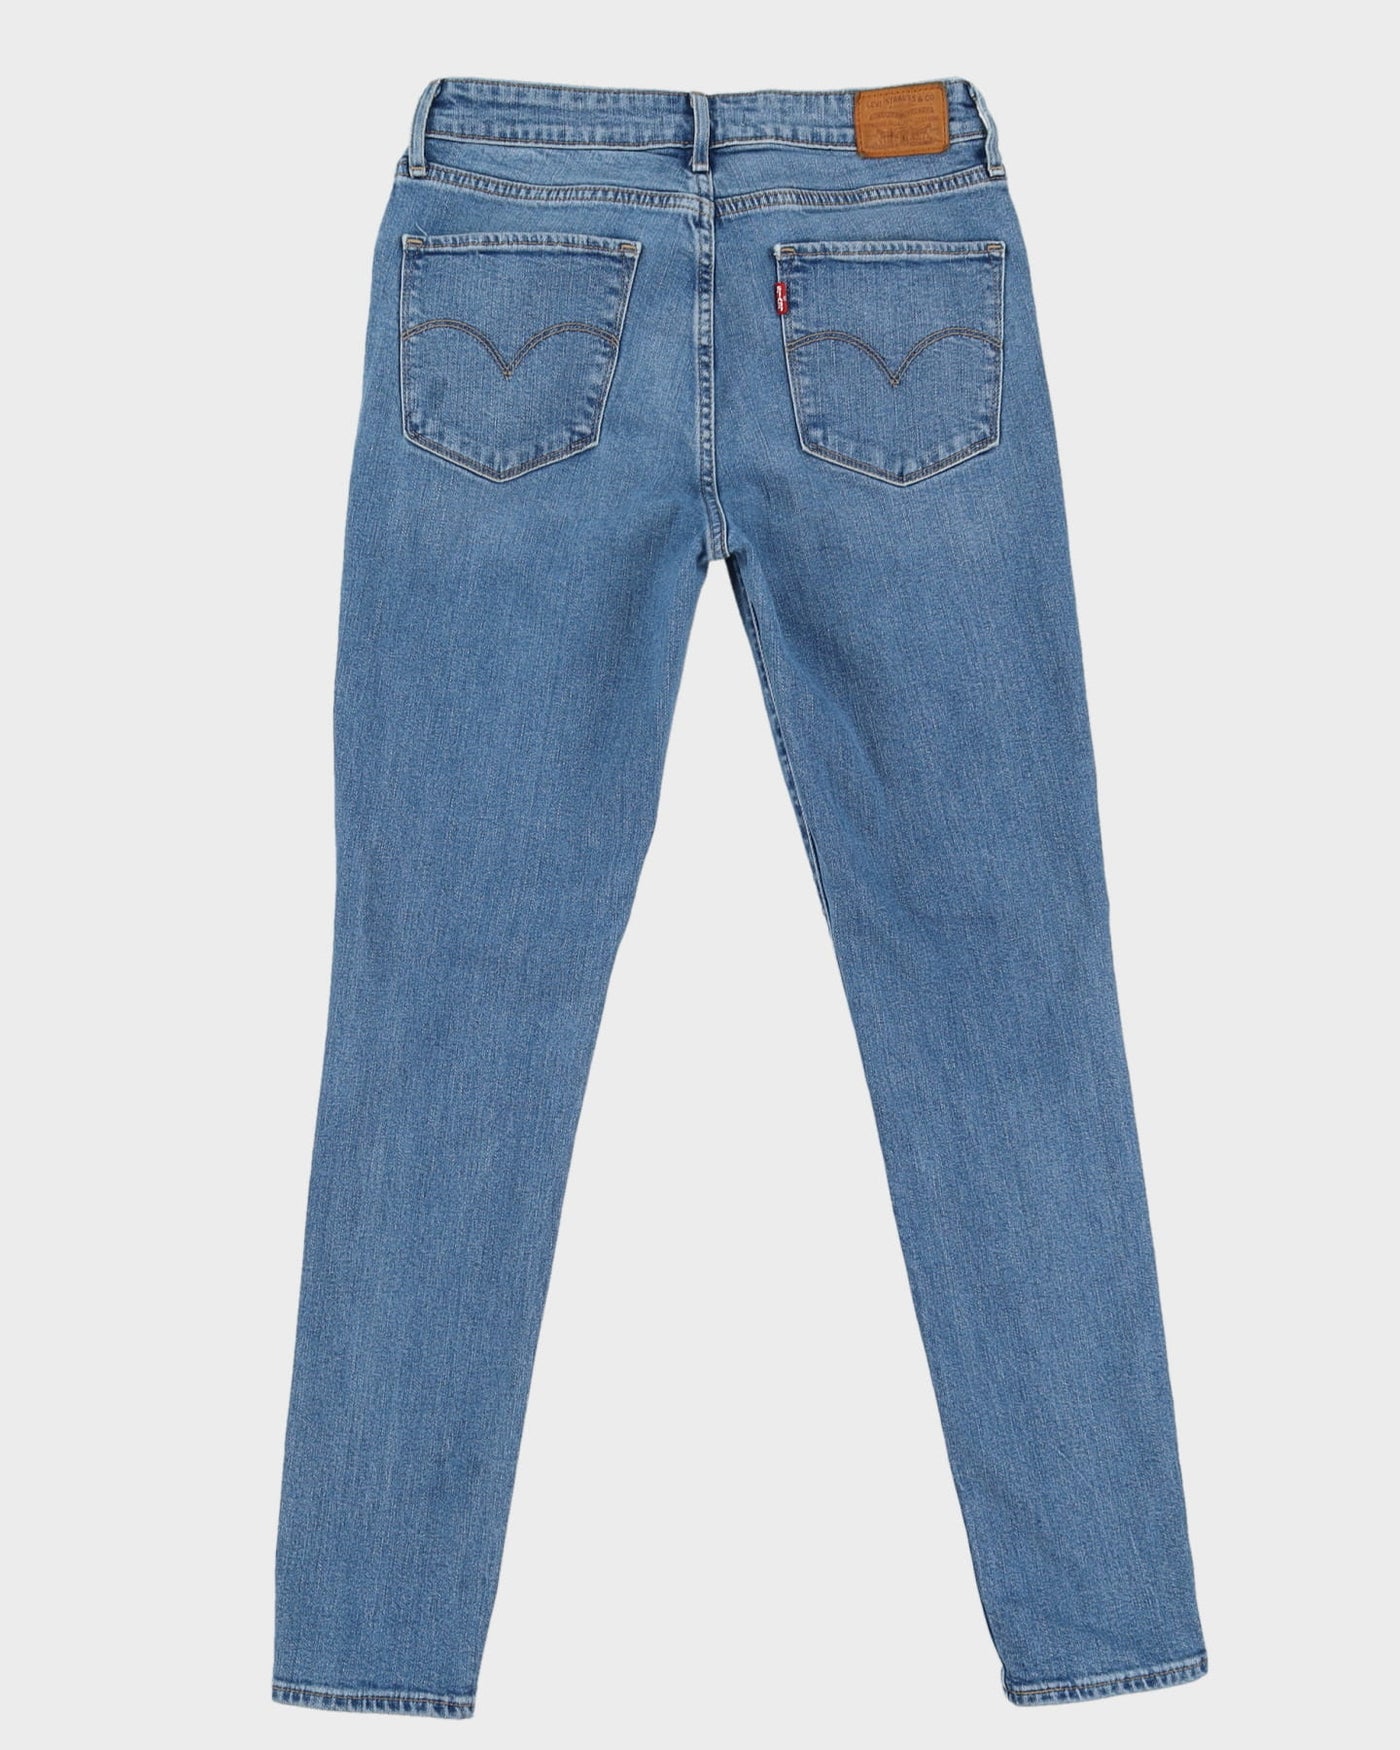 Levi's Big E Re-Pro Blue Jeans - W29 L30